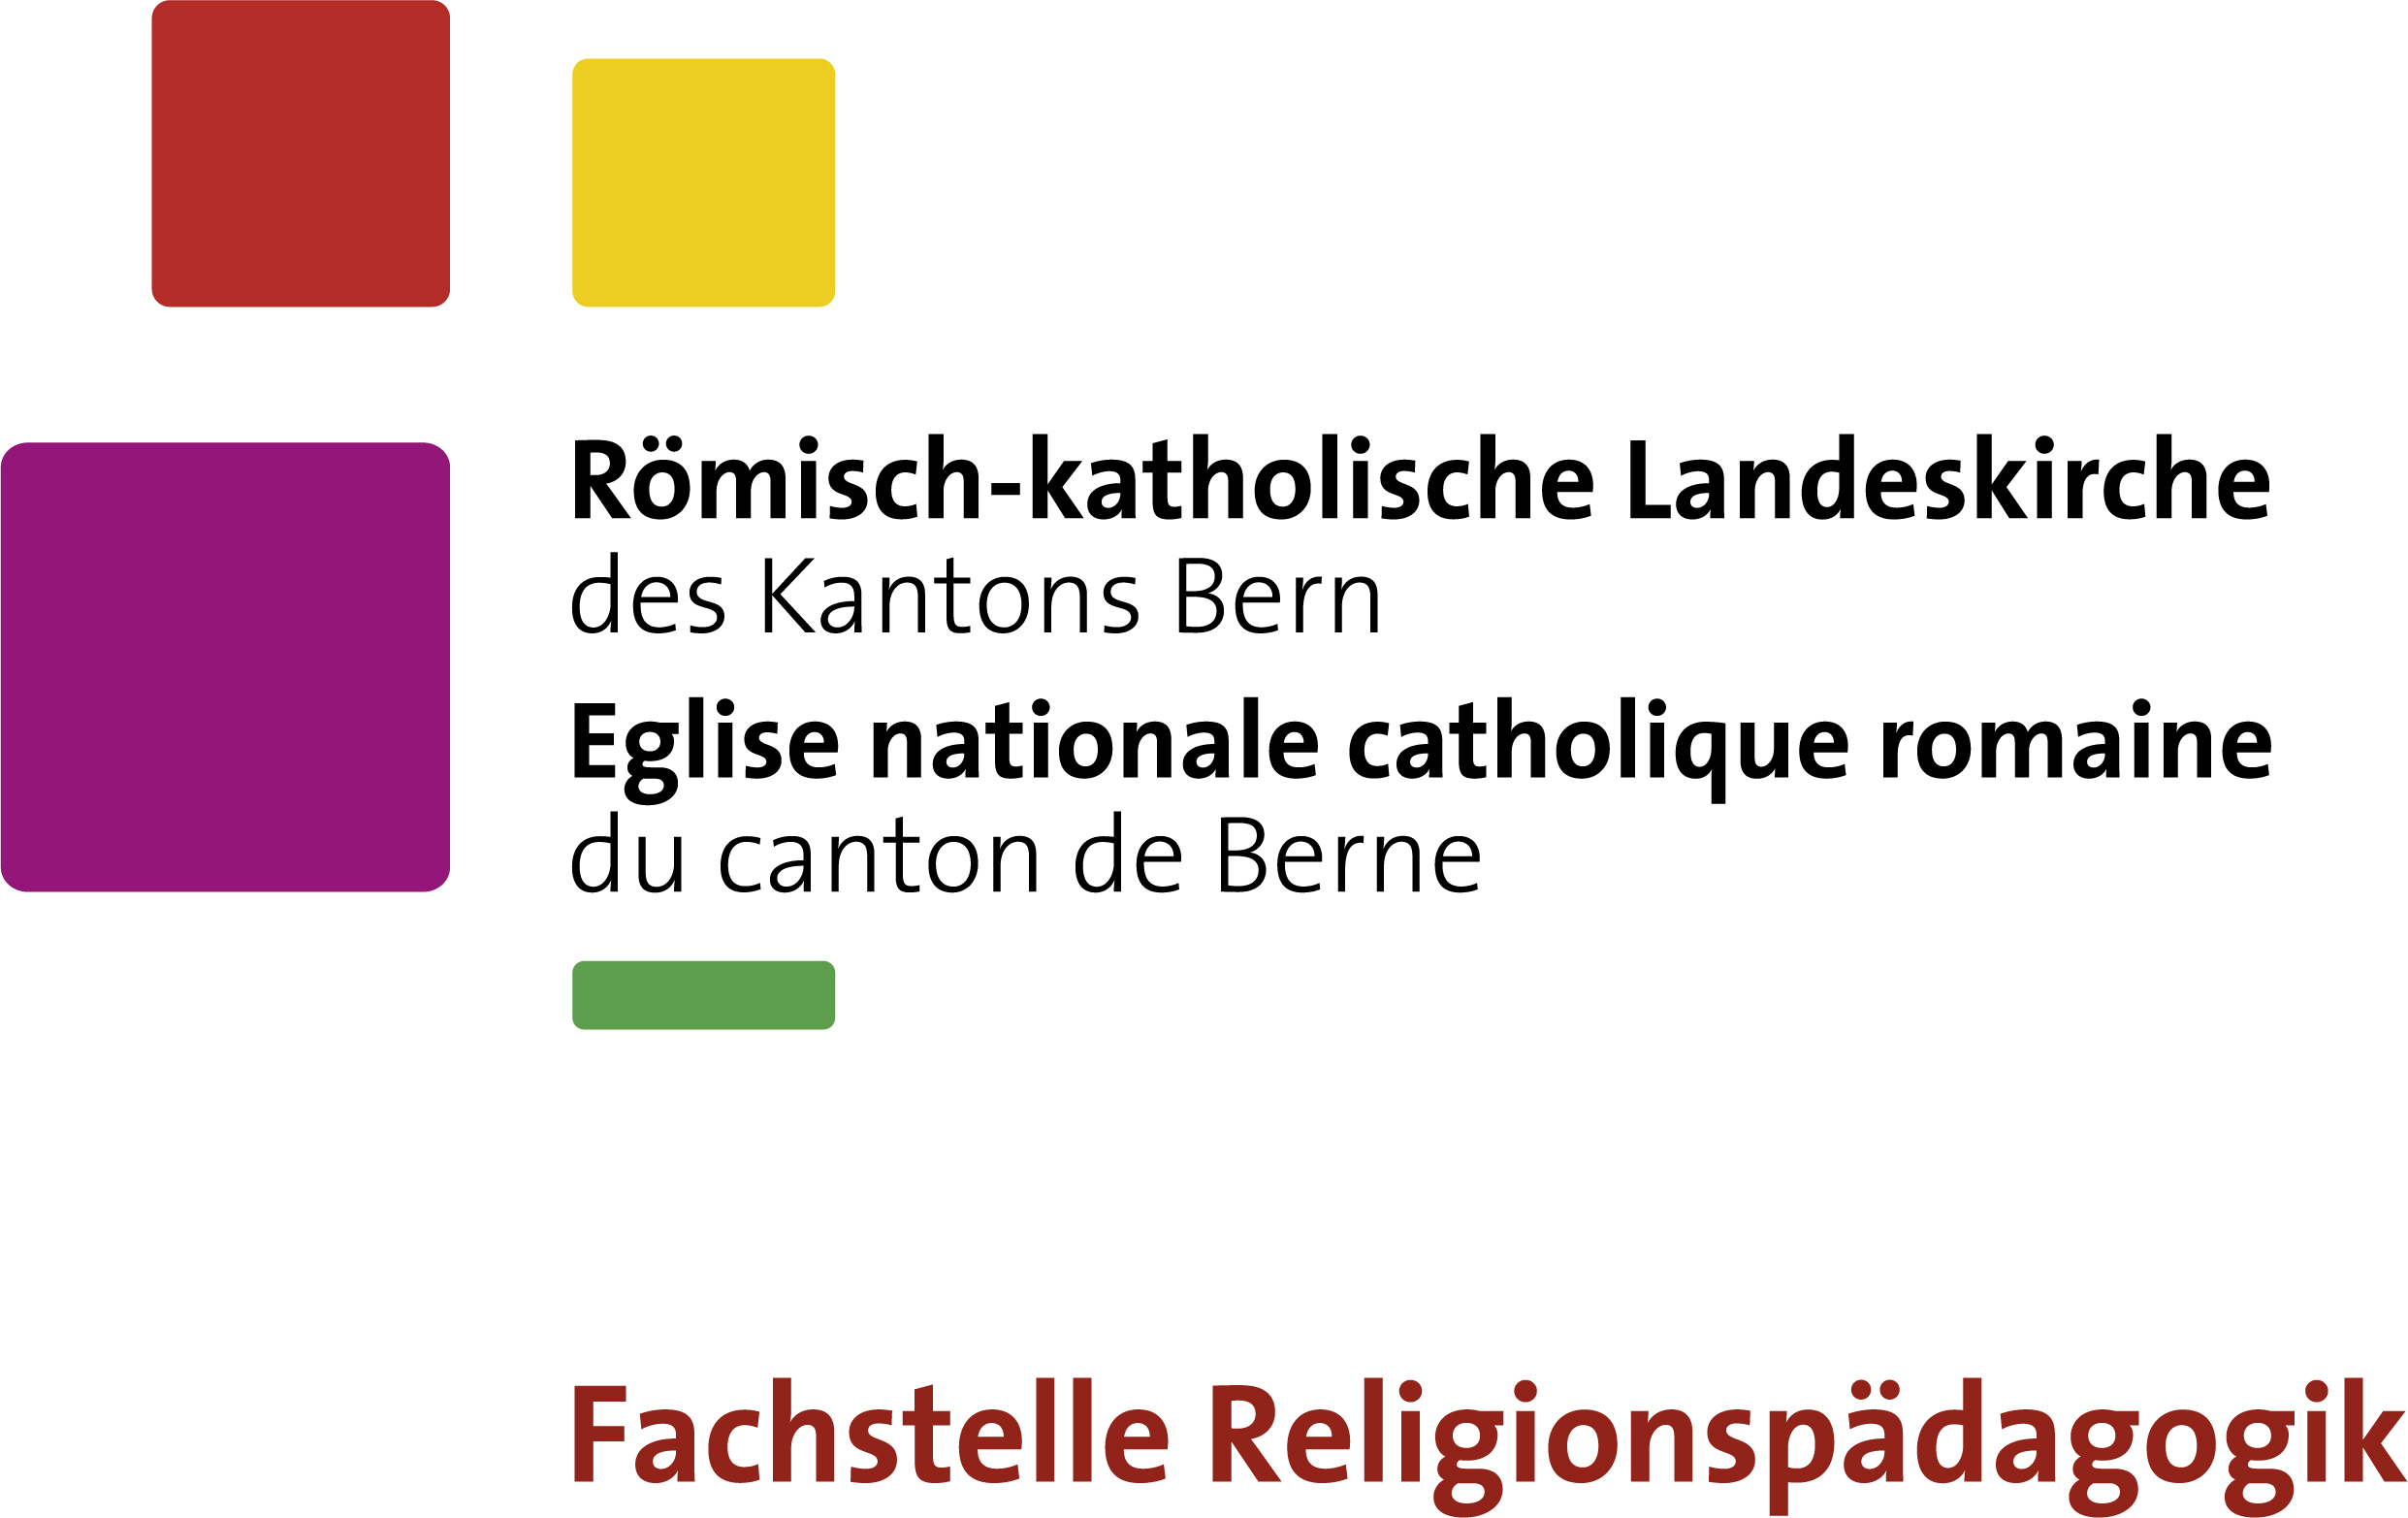 Fachstelle Religionspädagogik der
Römisch-katholischen Landeskirche des Kantons Bern